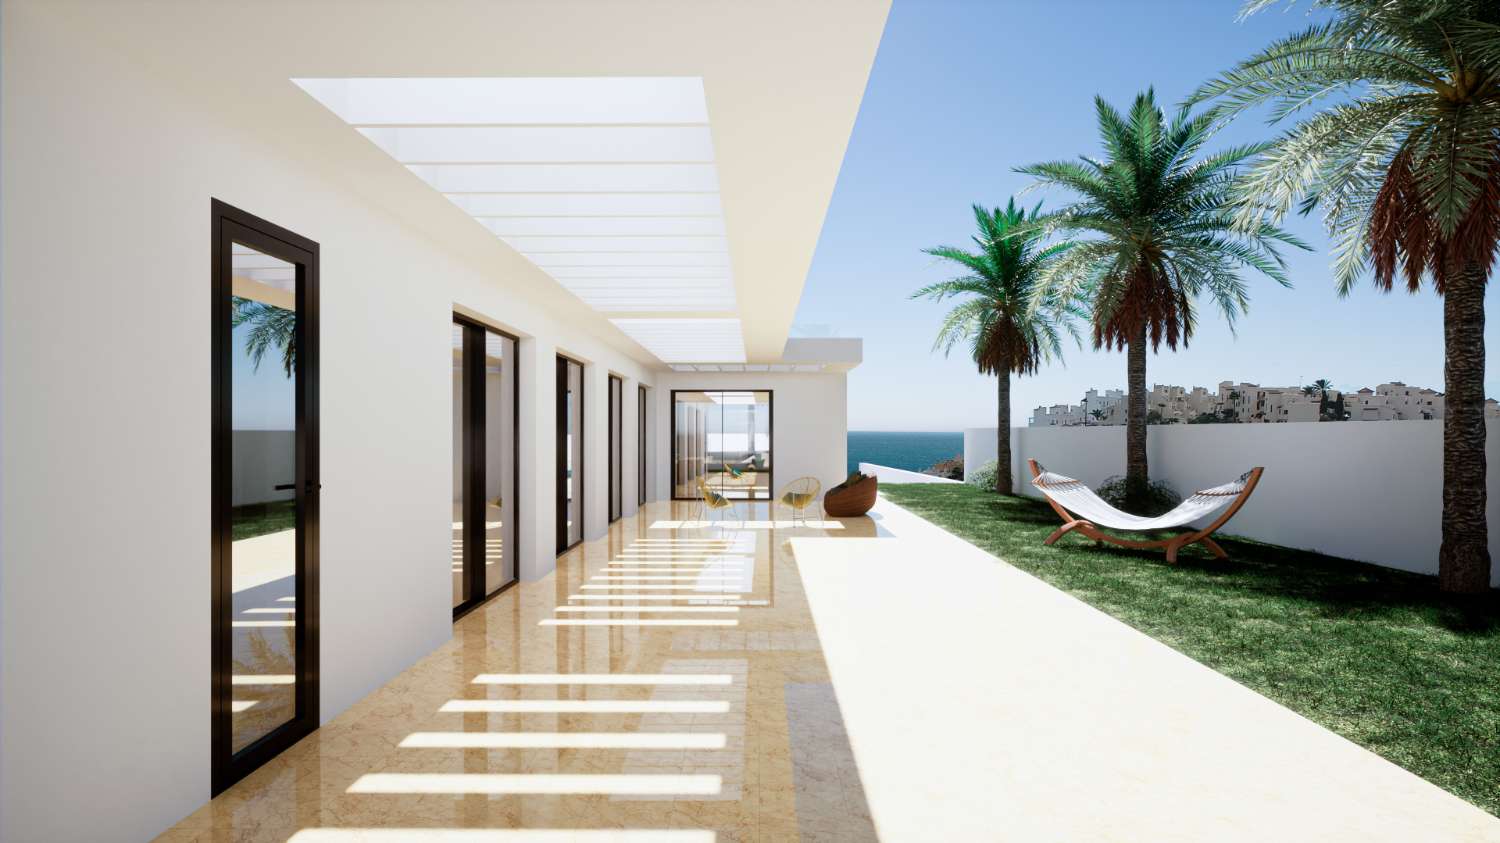 en nivå Villa på 208 m2 på en tomt på 982 m2. Vacker havsutsikt. I ytterligare 229 m2 terrasser.